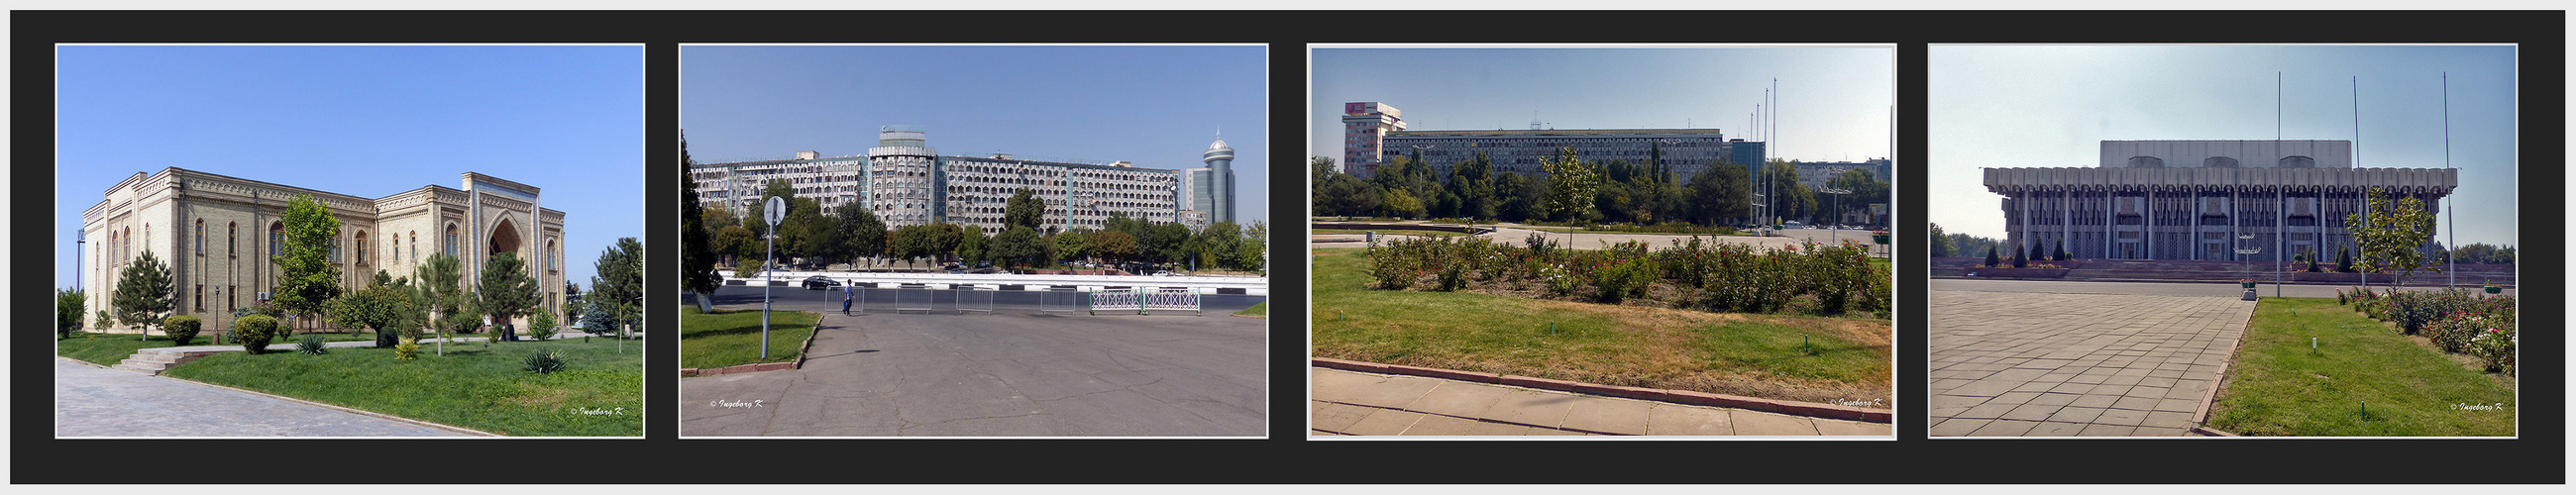 Taschkent - ein kleiner Streifzug durch das moderne Taschkent